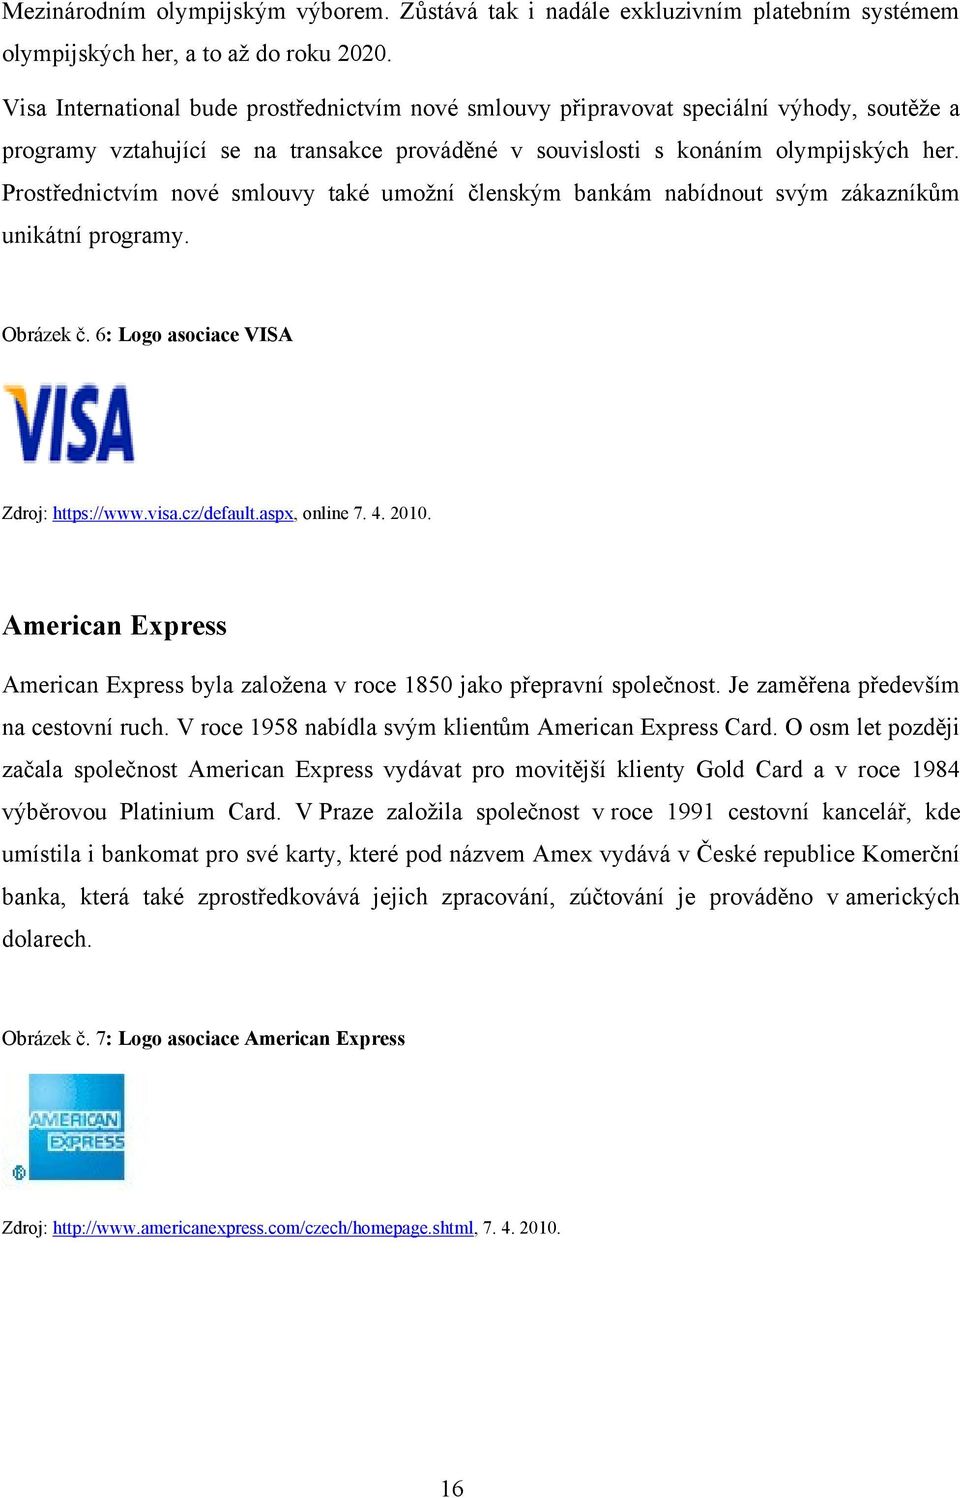 Prostřednictvím nové smlouvy také umoţní členským bankám nabídnout svým zákazníkům unikátní programy. Obrázek č. 6: Logo asociace VISA Zdroj: https://www.visa.cz/default.aspx, online 7. 4. 2010.